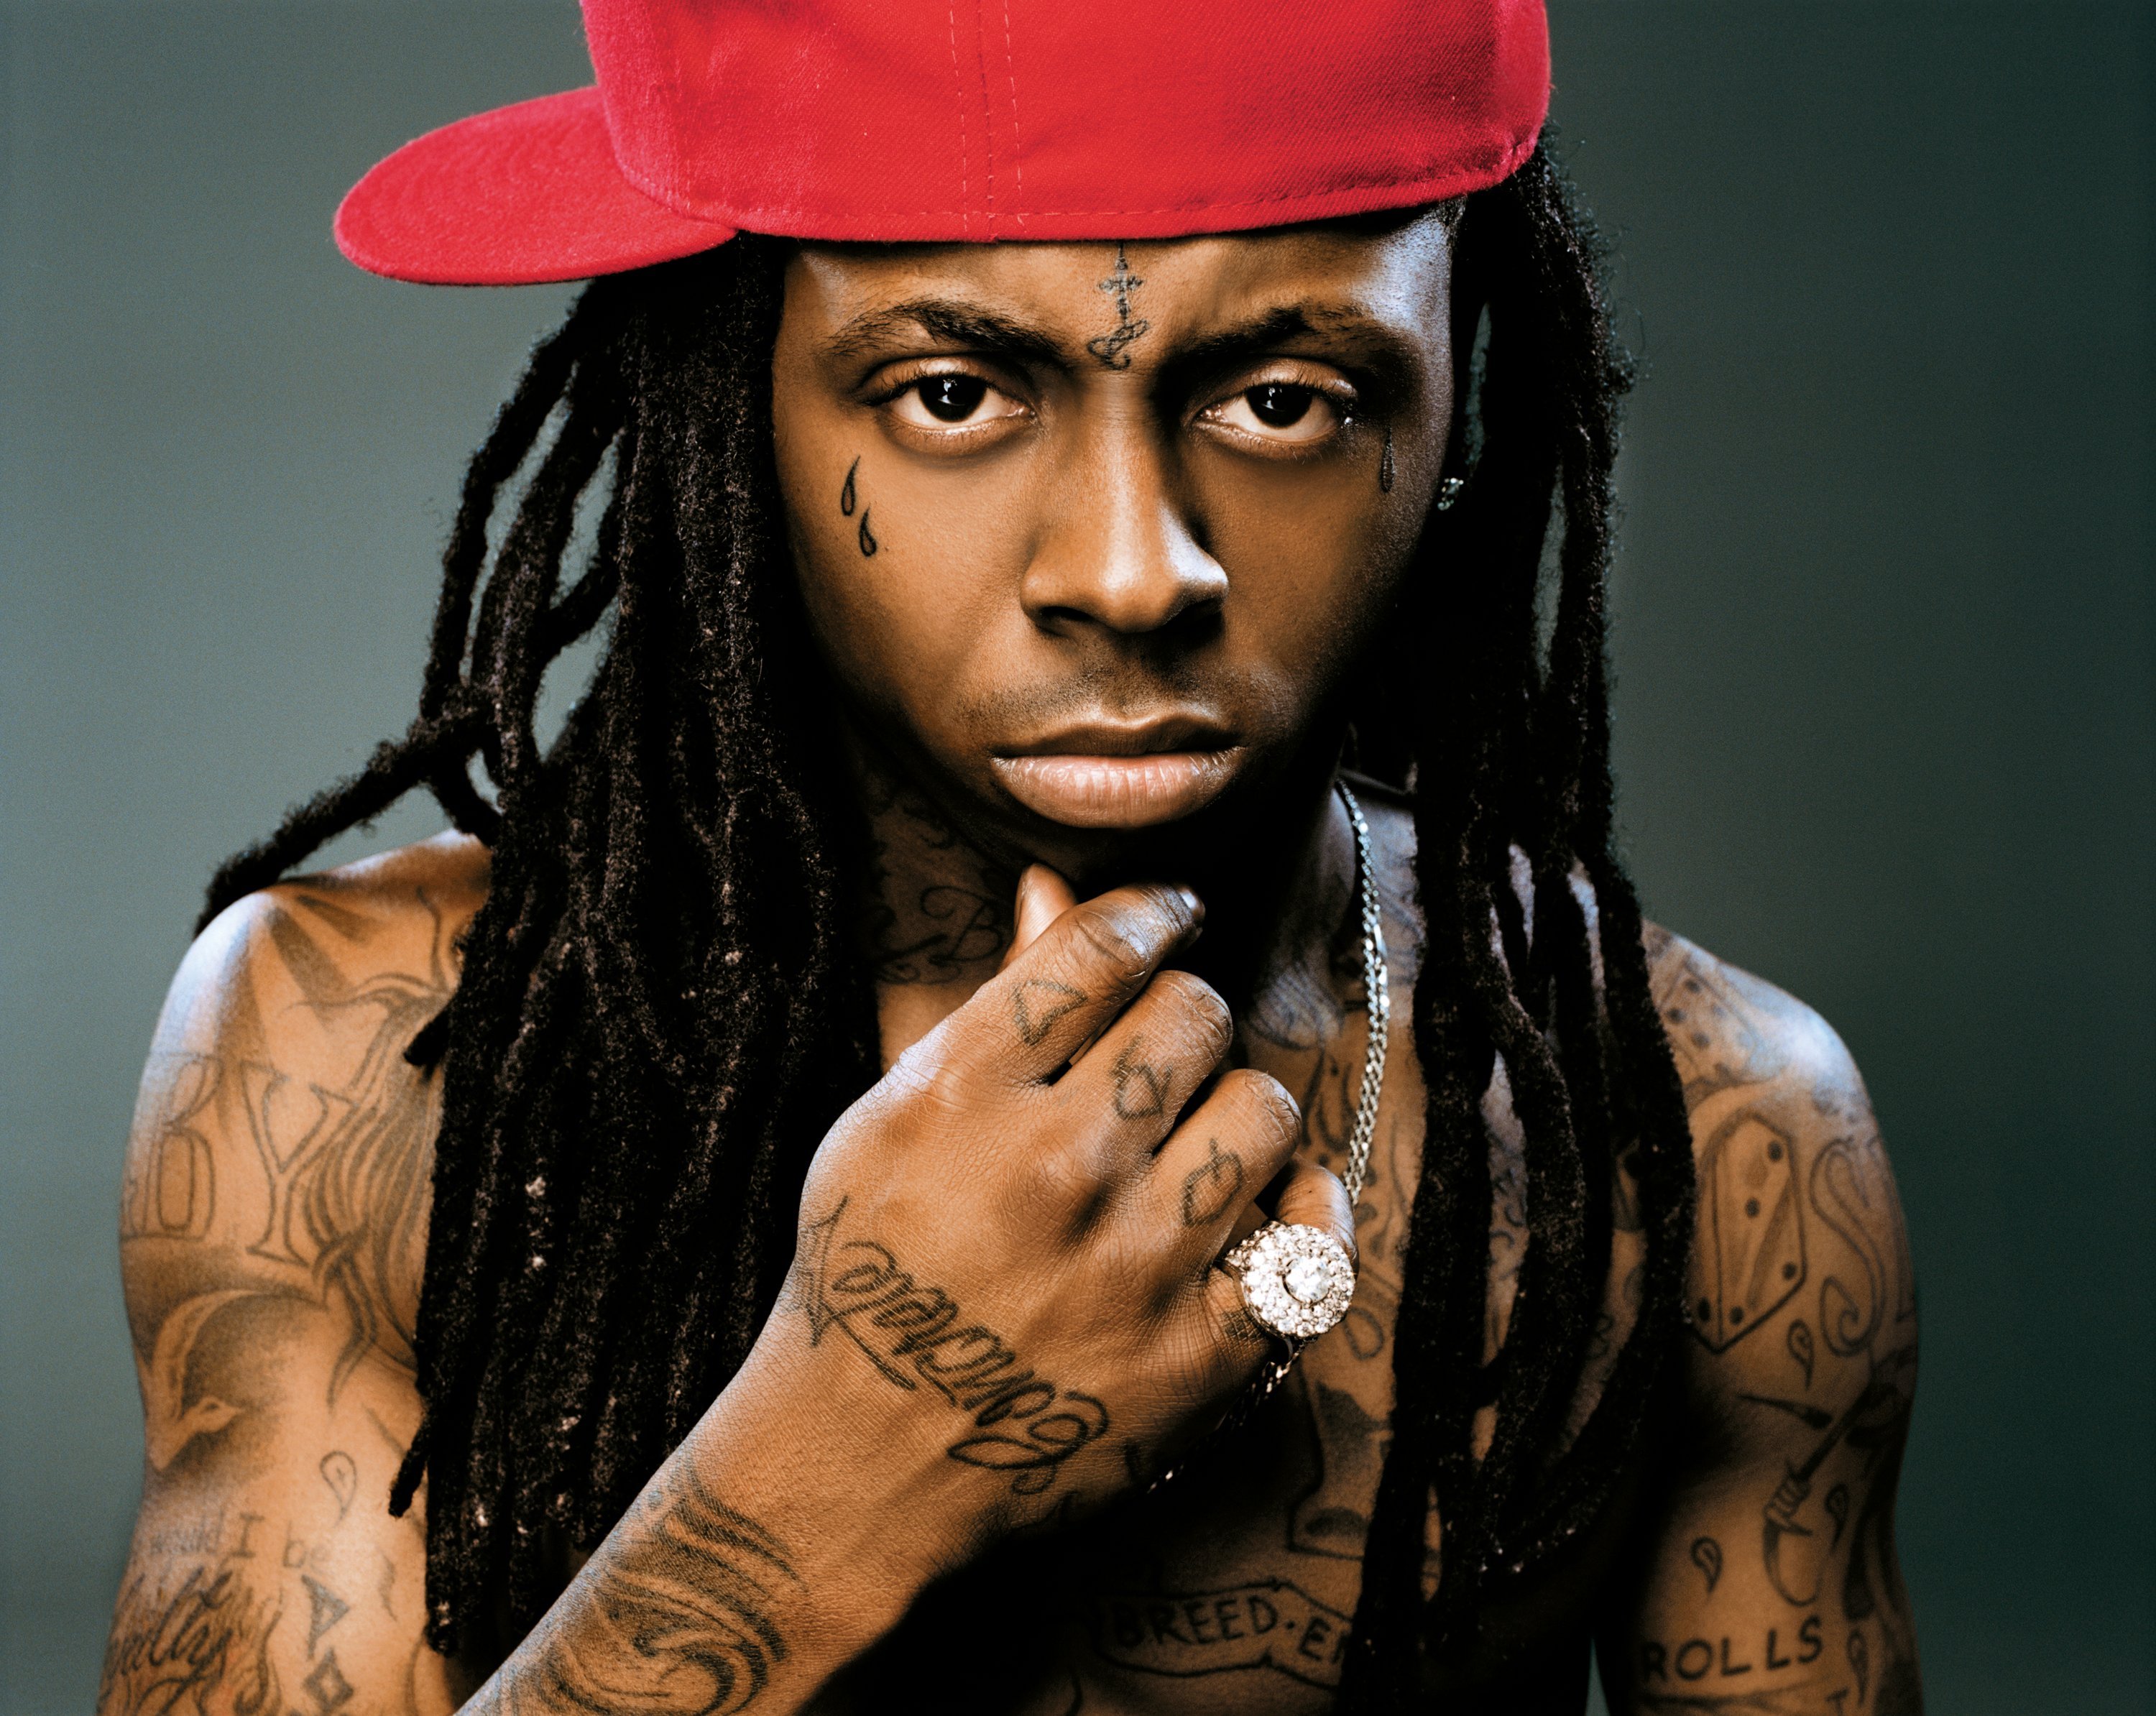 Melhores papéis de parede de Lil Wayne para tela do telefone